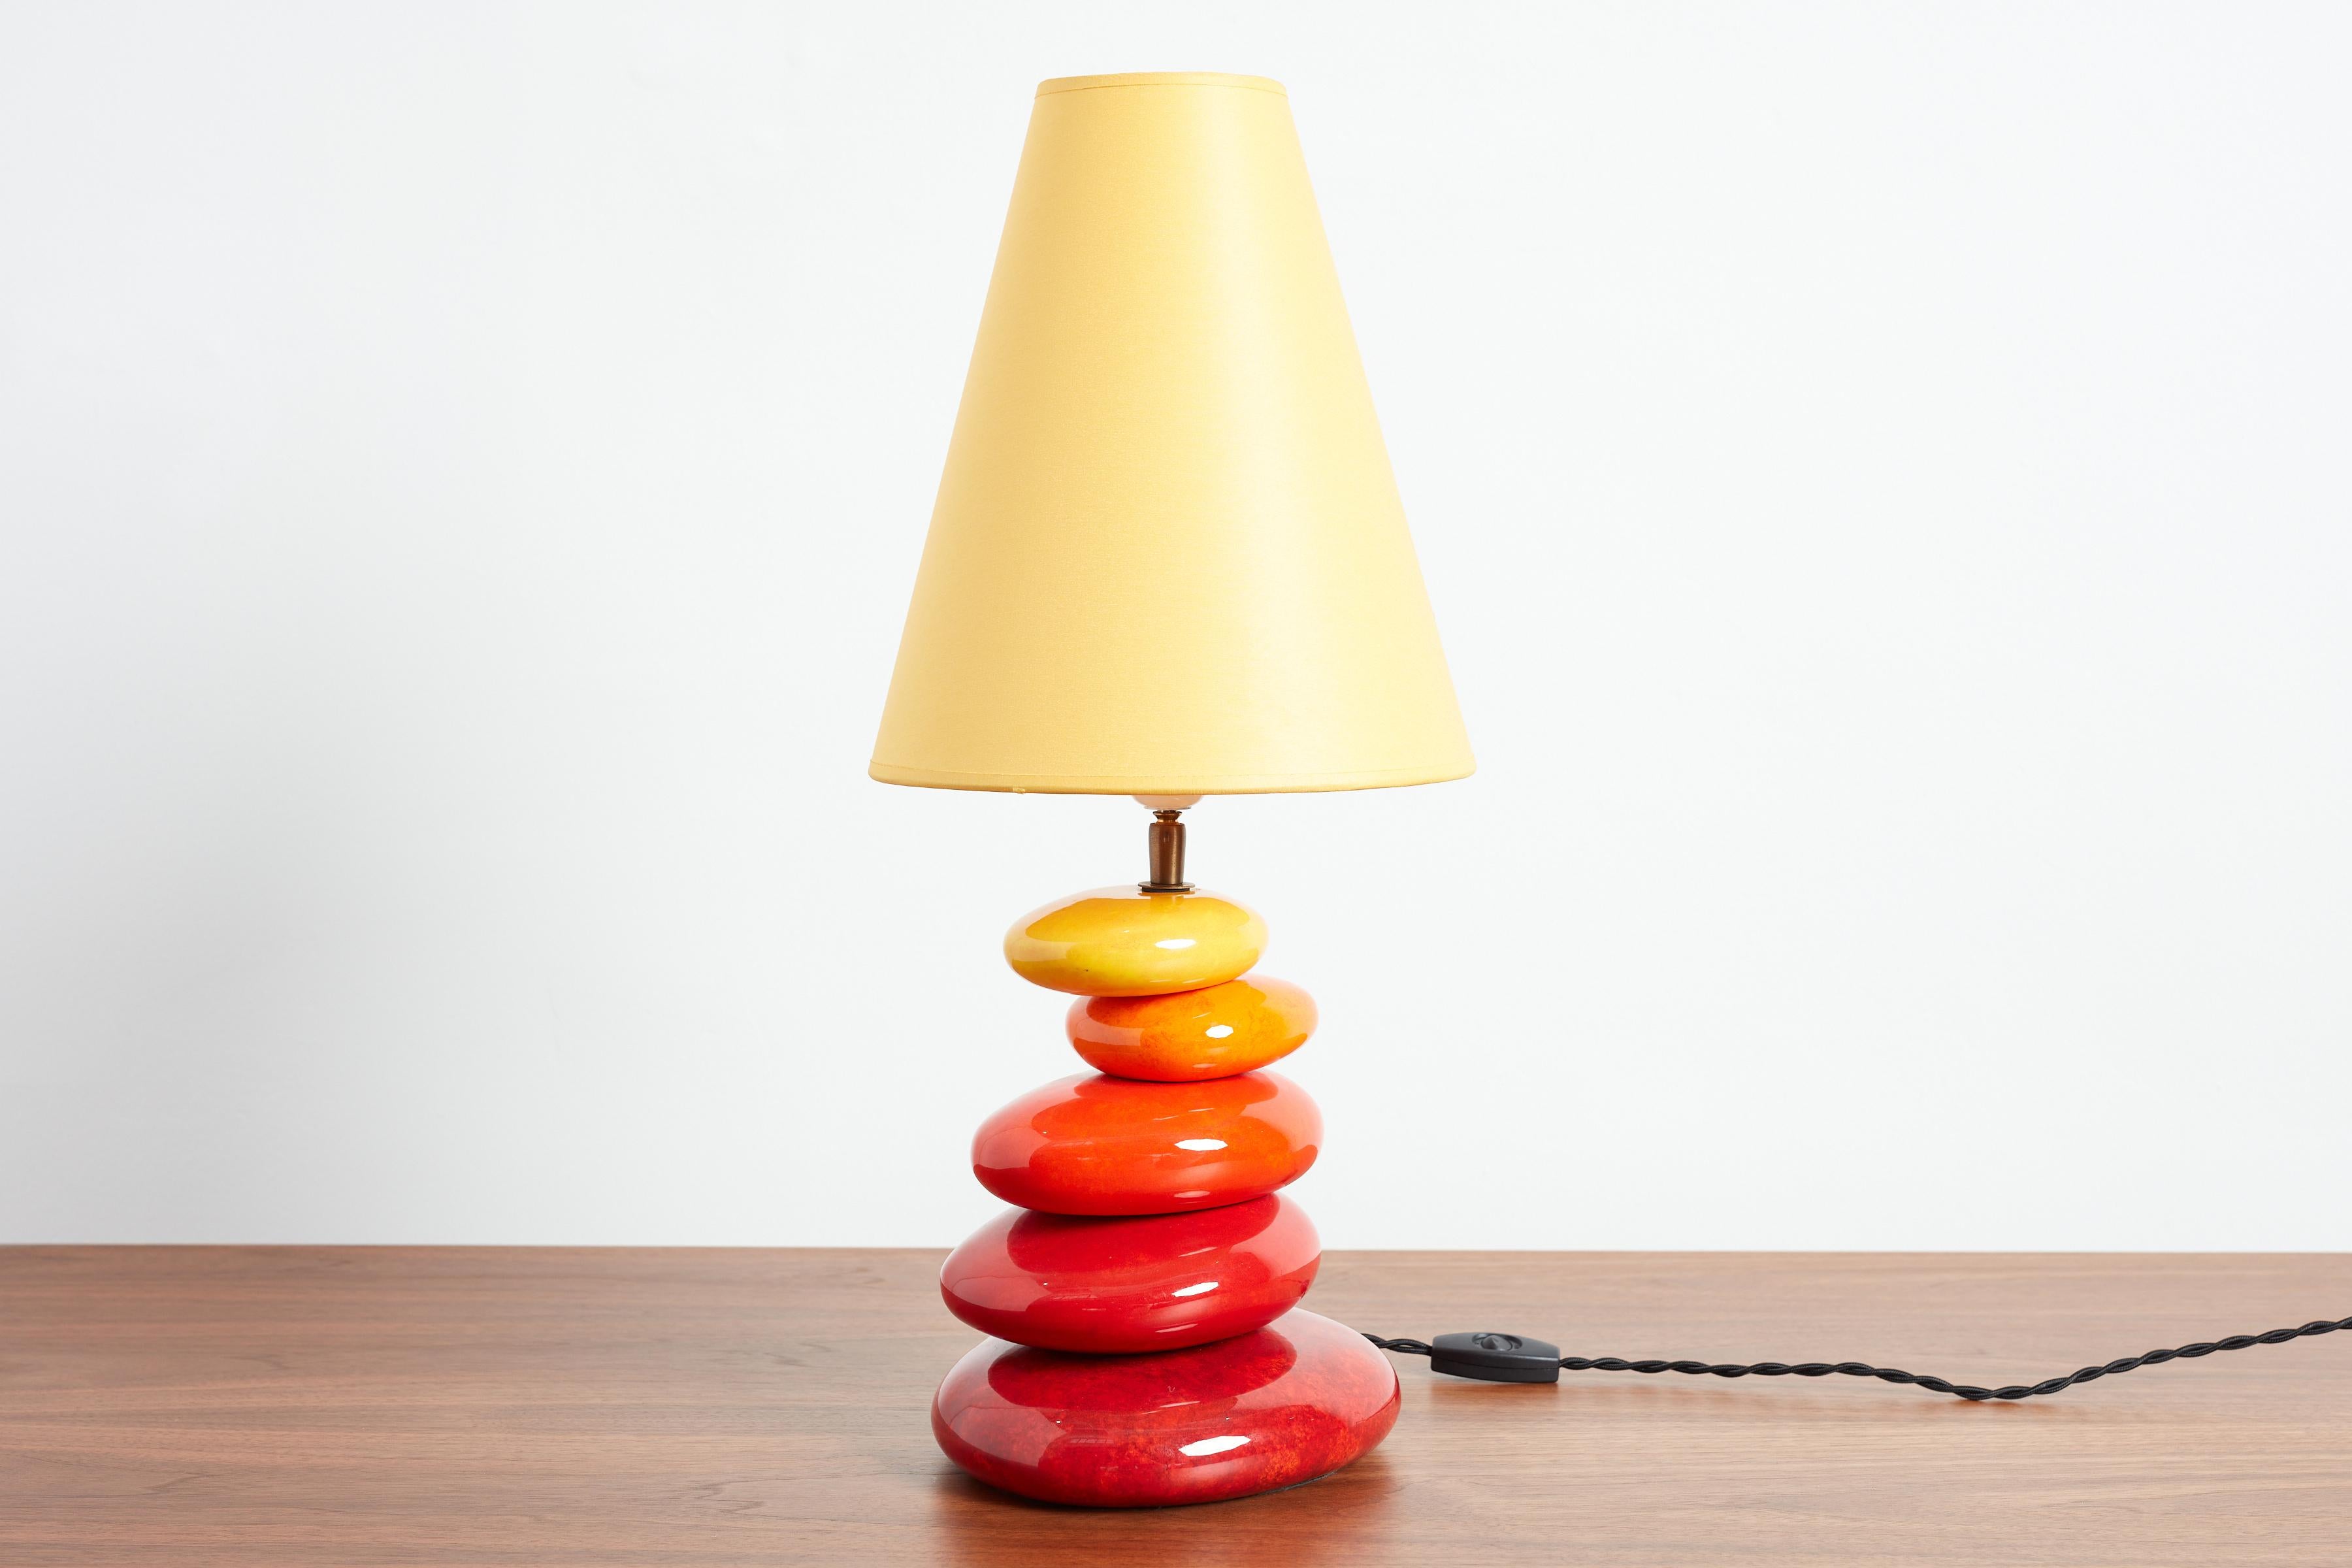 Lampe de table en céramique française colorée avec des sphères empilées de forme irrégulière.
France, vers 1970
Teinte originale 
Nouveau câblage
